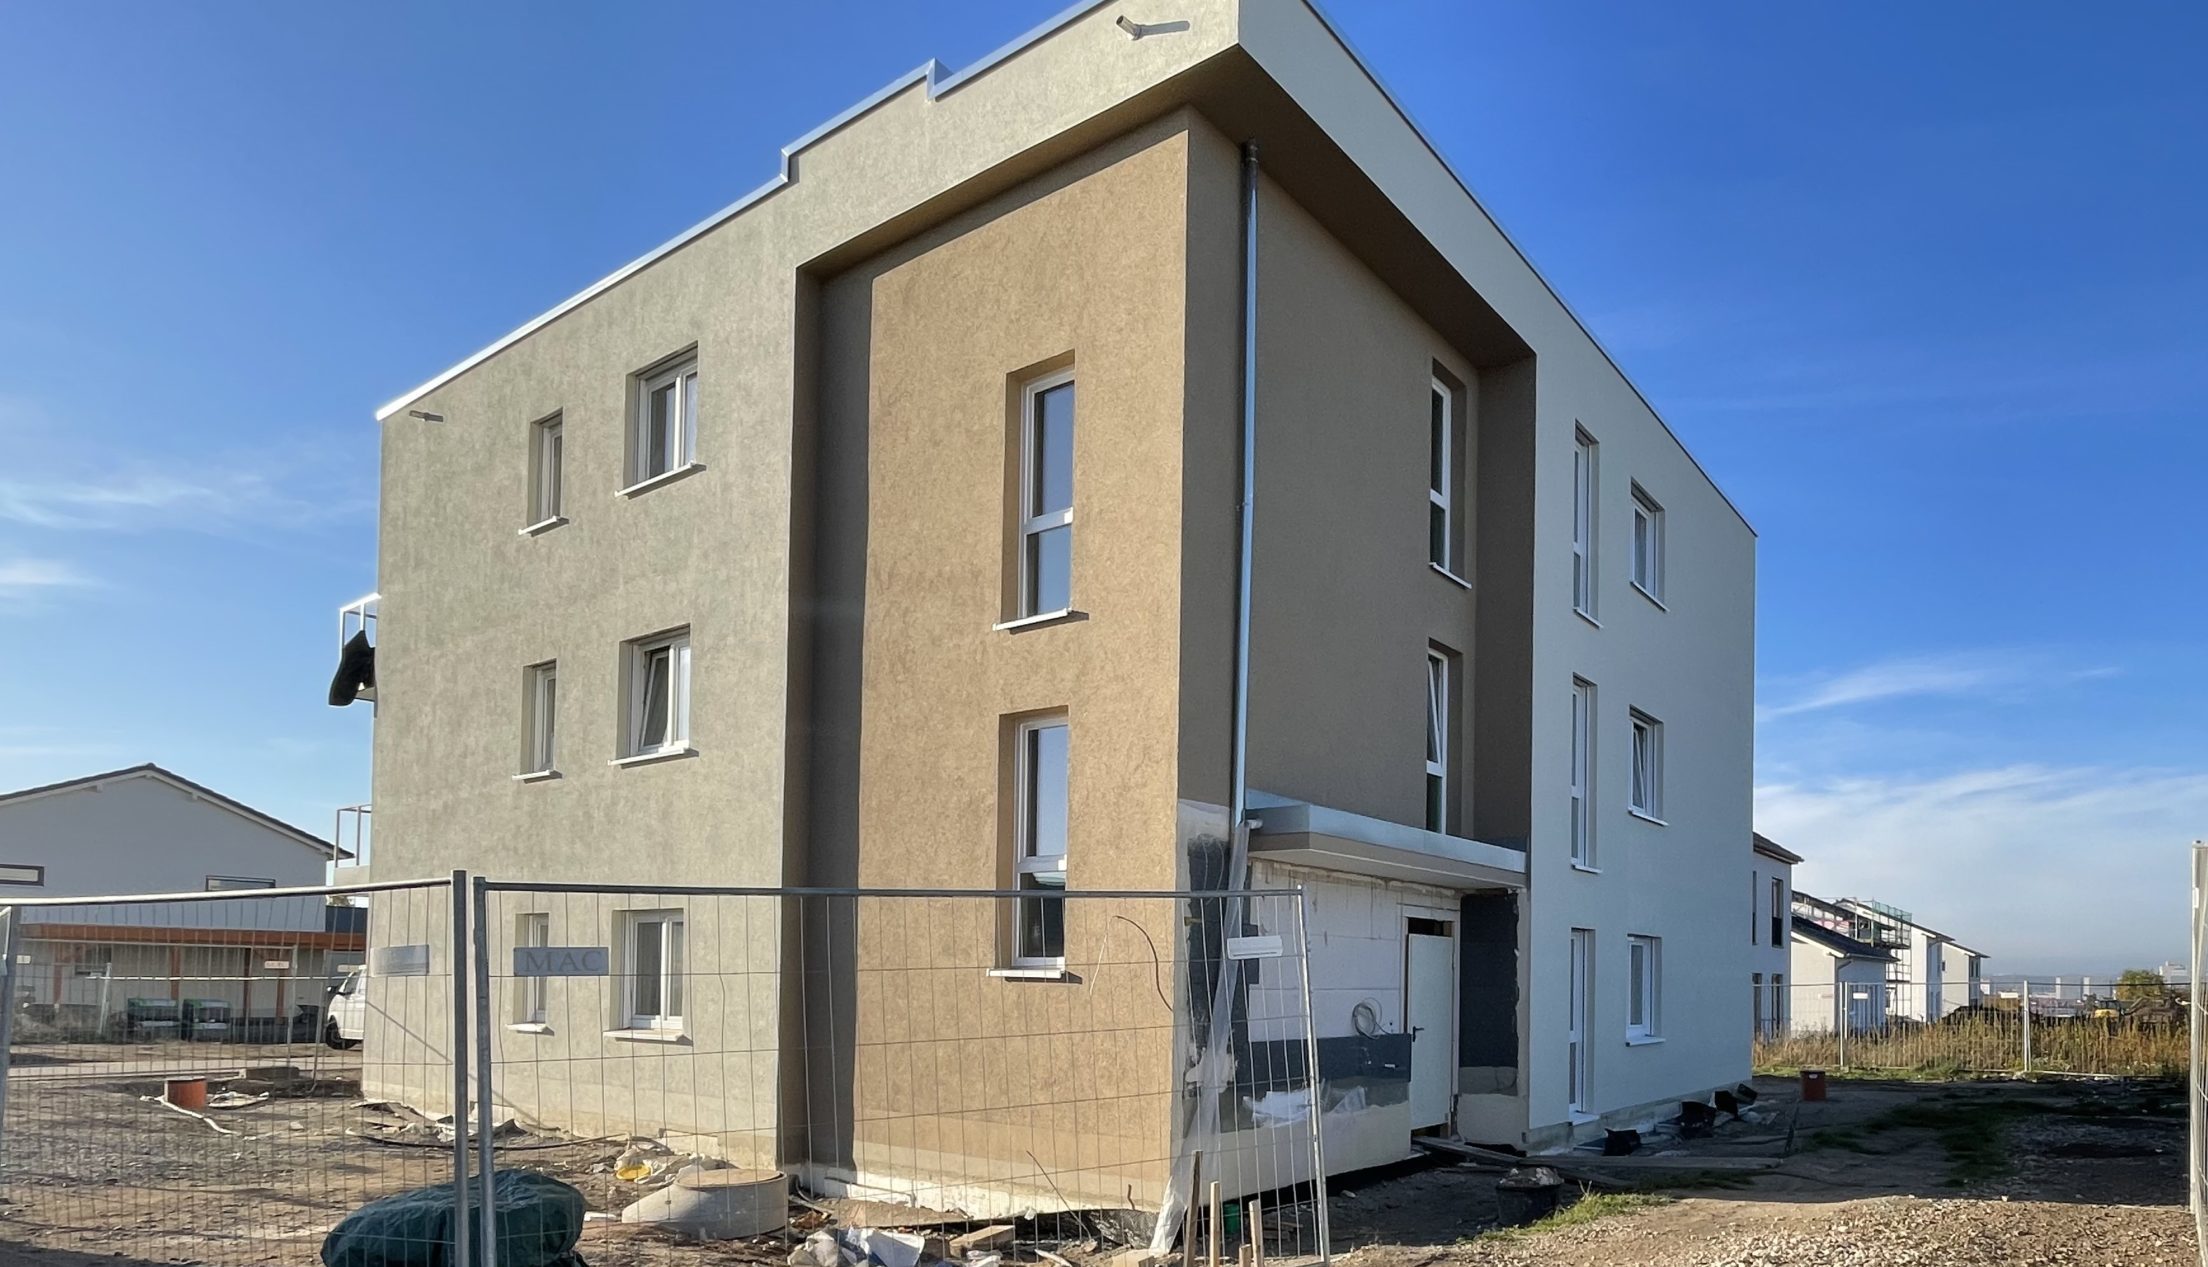 Eigentumswohnungen in Erfurt – Bau schreitet gut voran